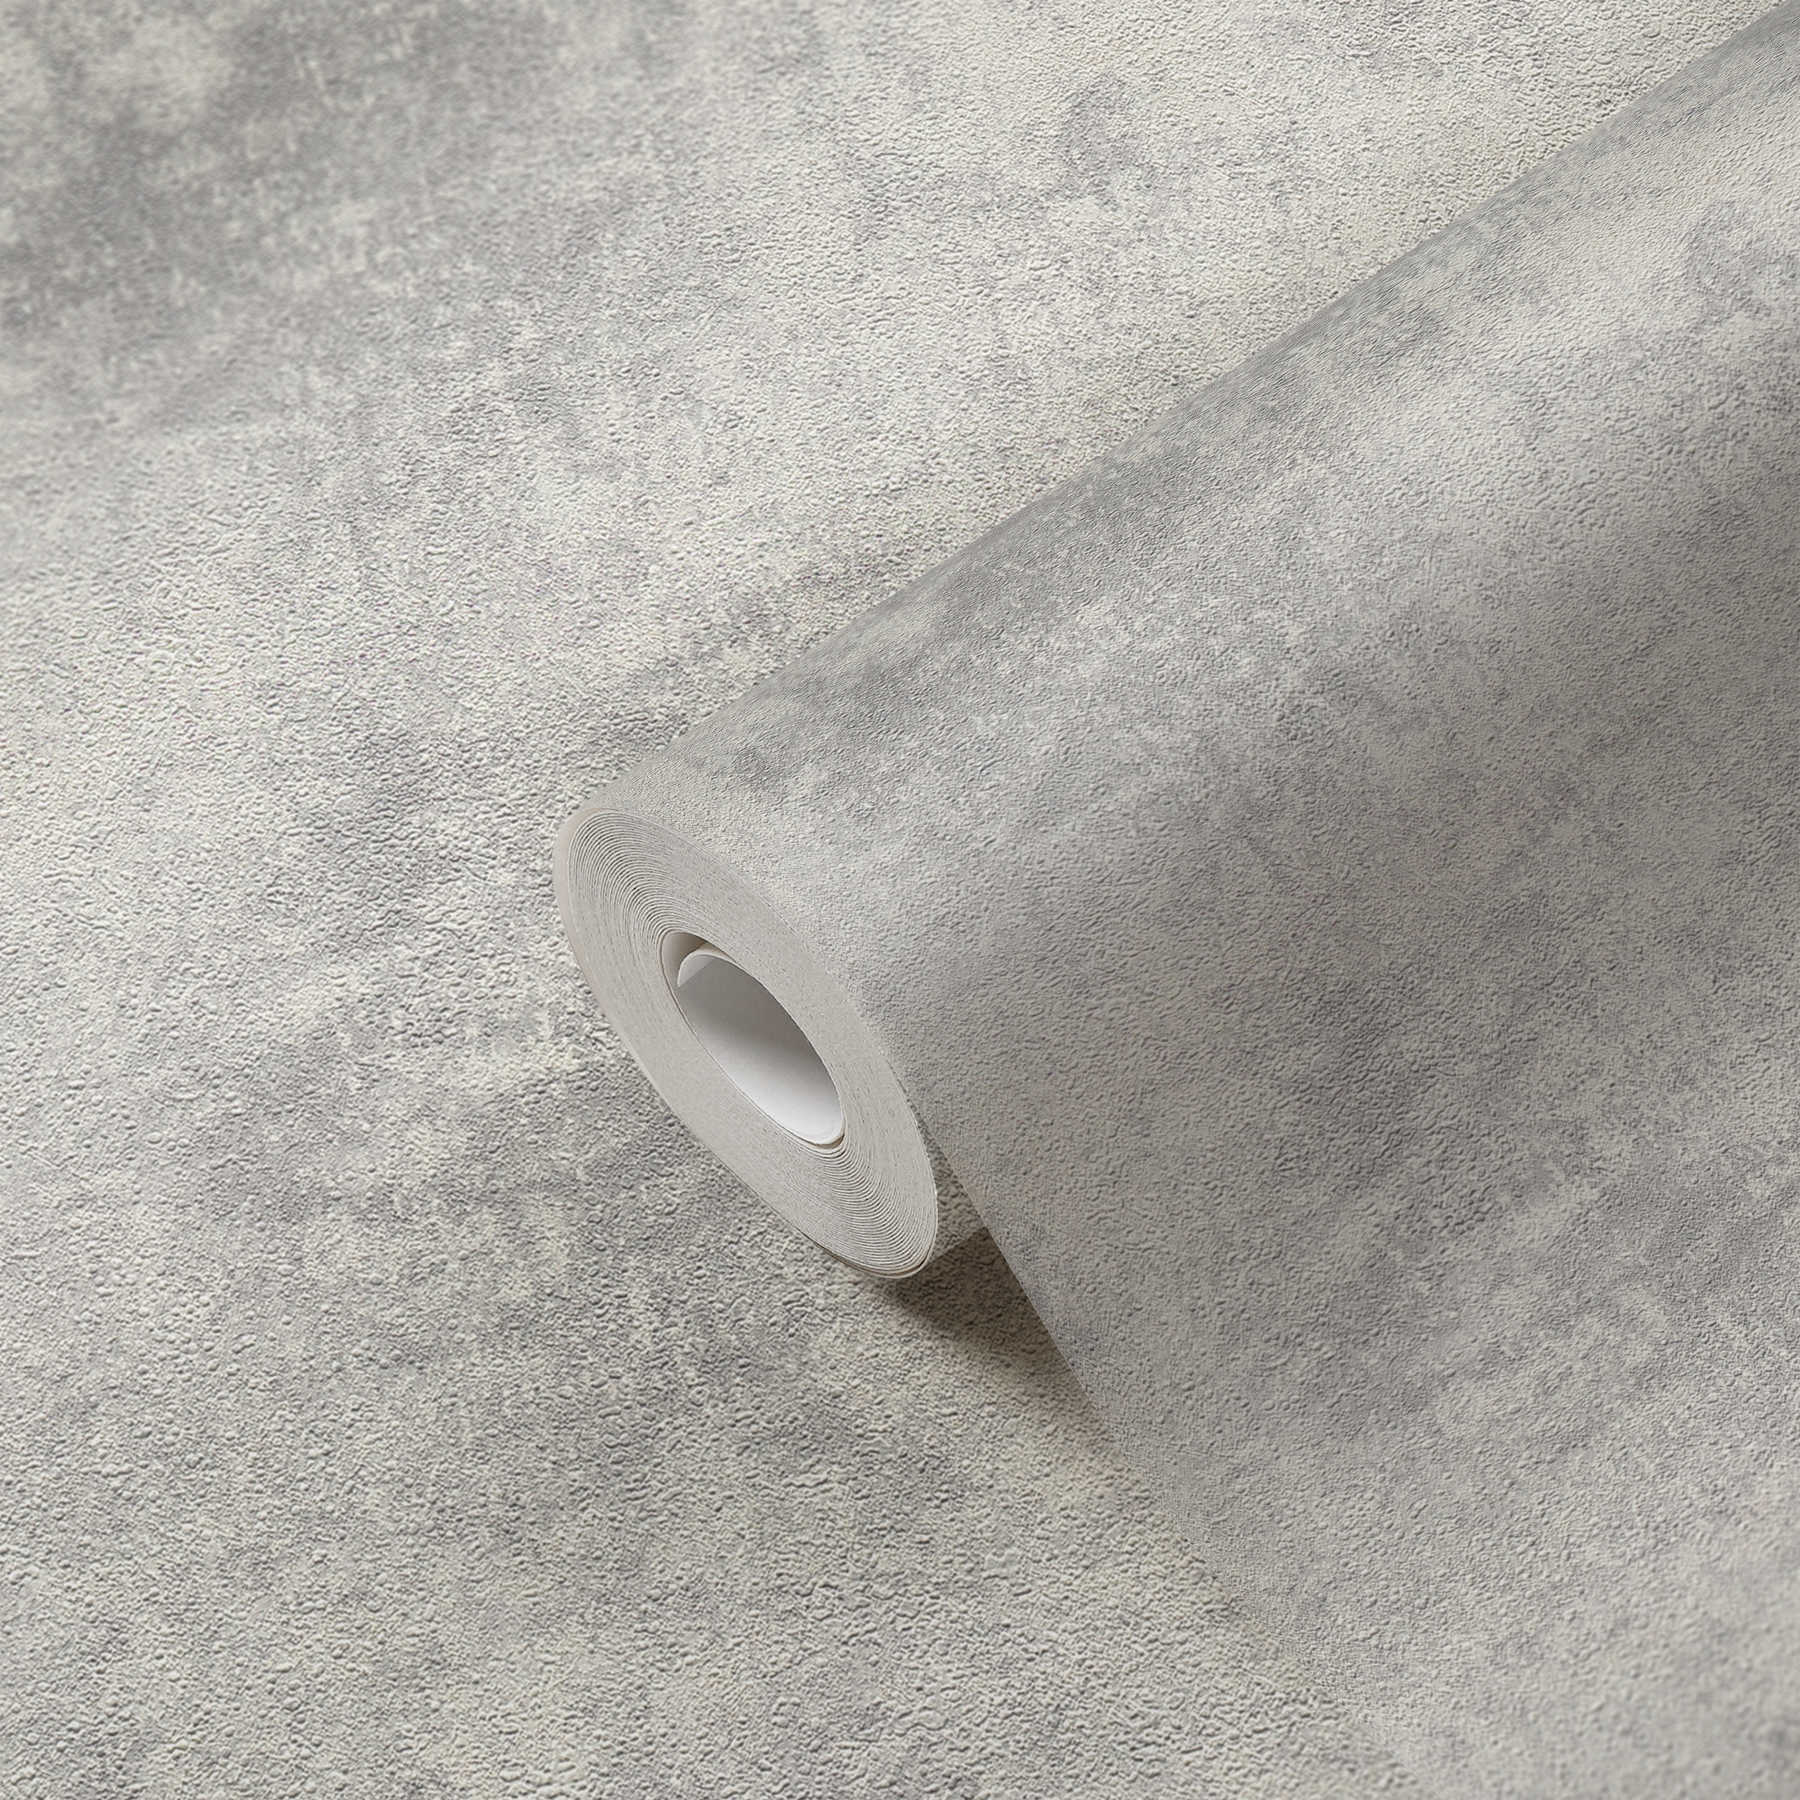             Carte da parati in tessuto non tessuto con aspetto di intonaco a disco e motivo strutturato - grigio, argento
        